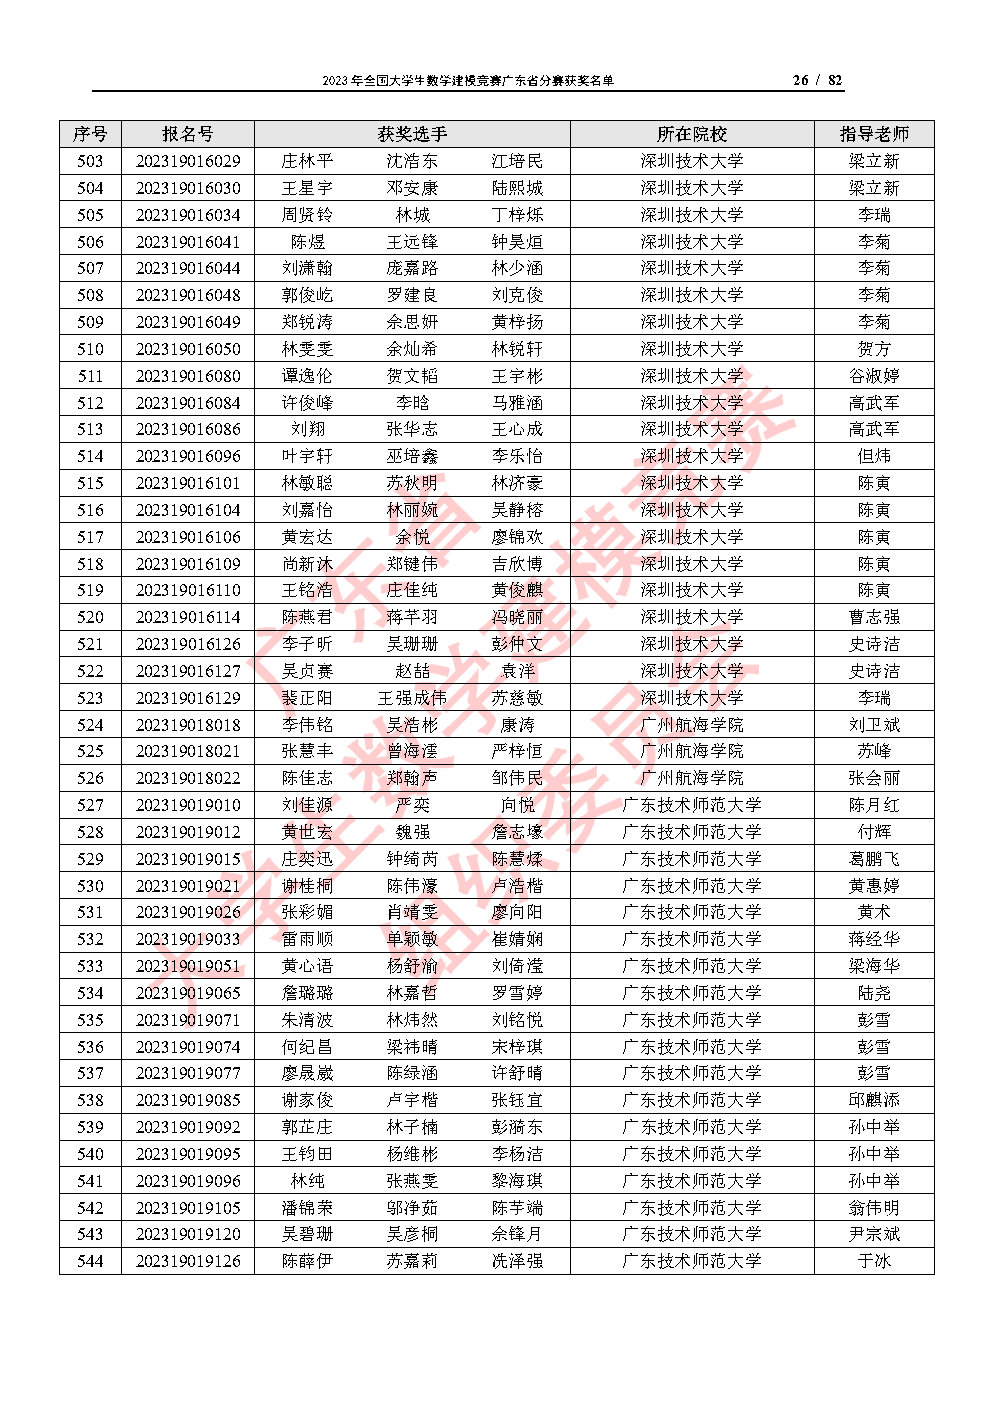 2023年全国大学生数学建模竞赛广东省分赛获奖名单_Page26.jpg